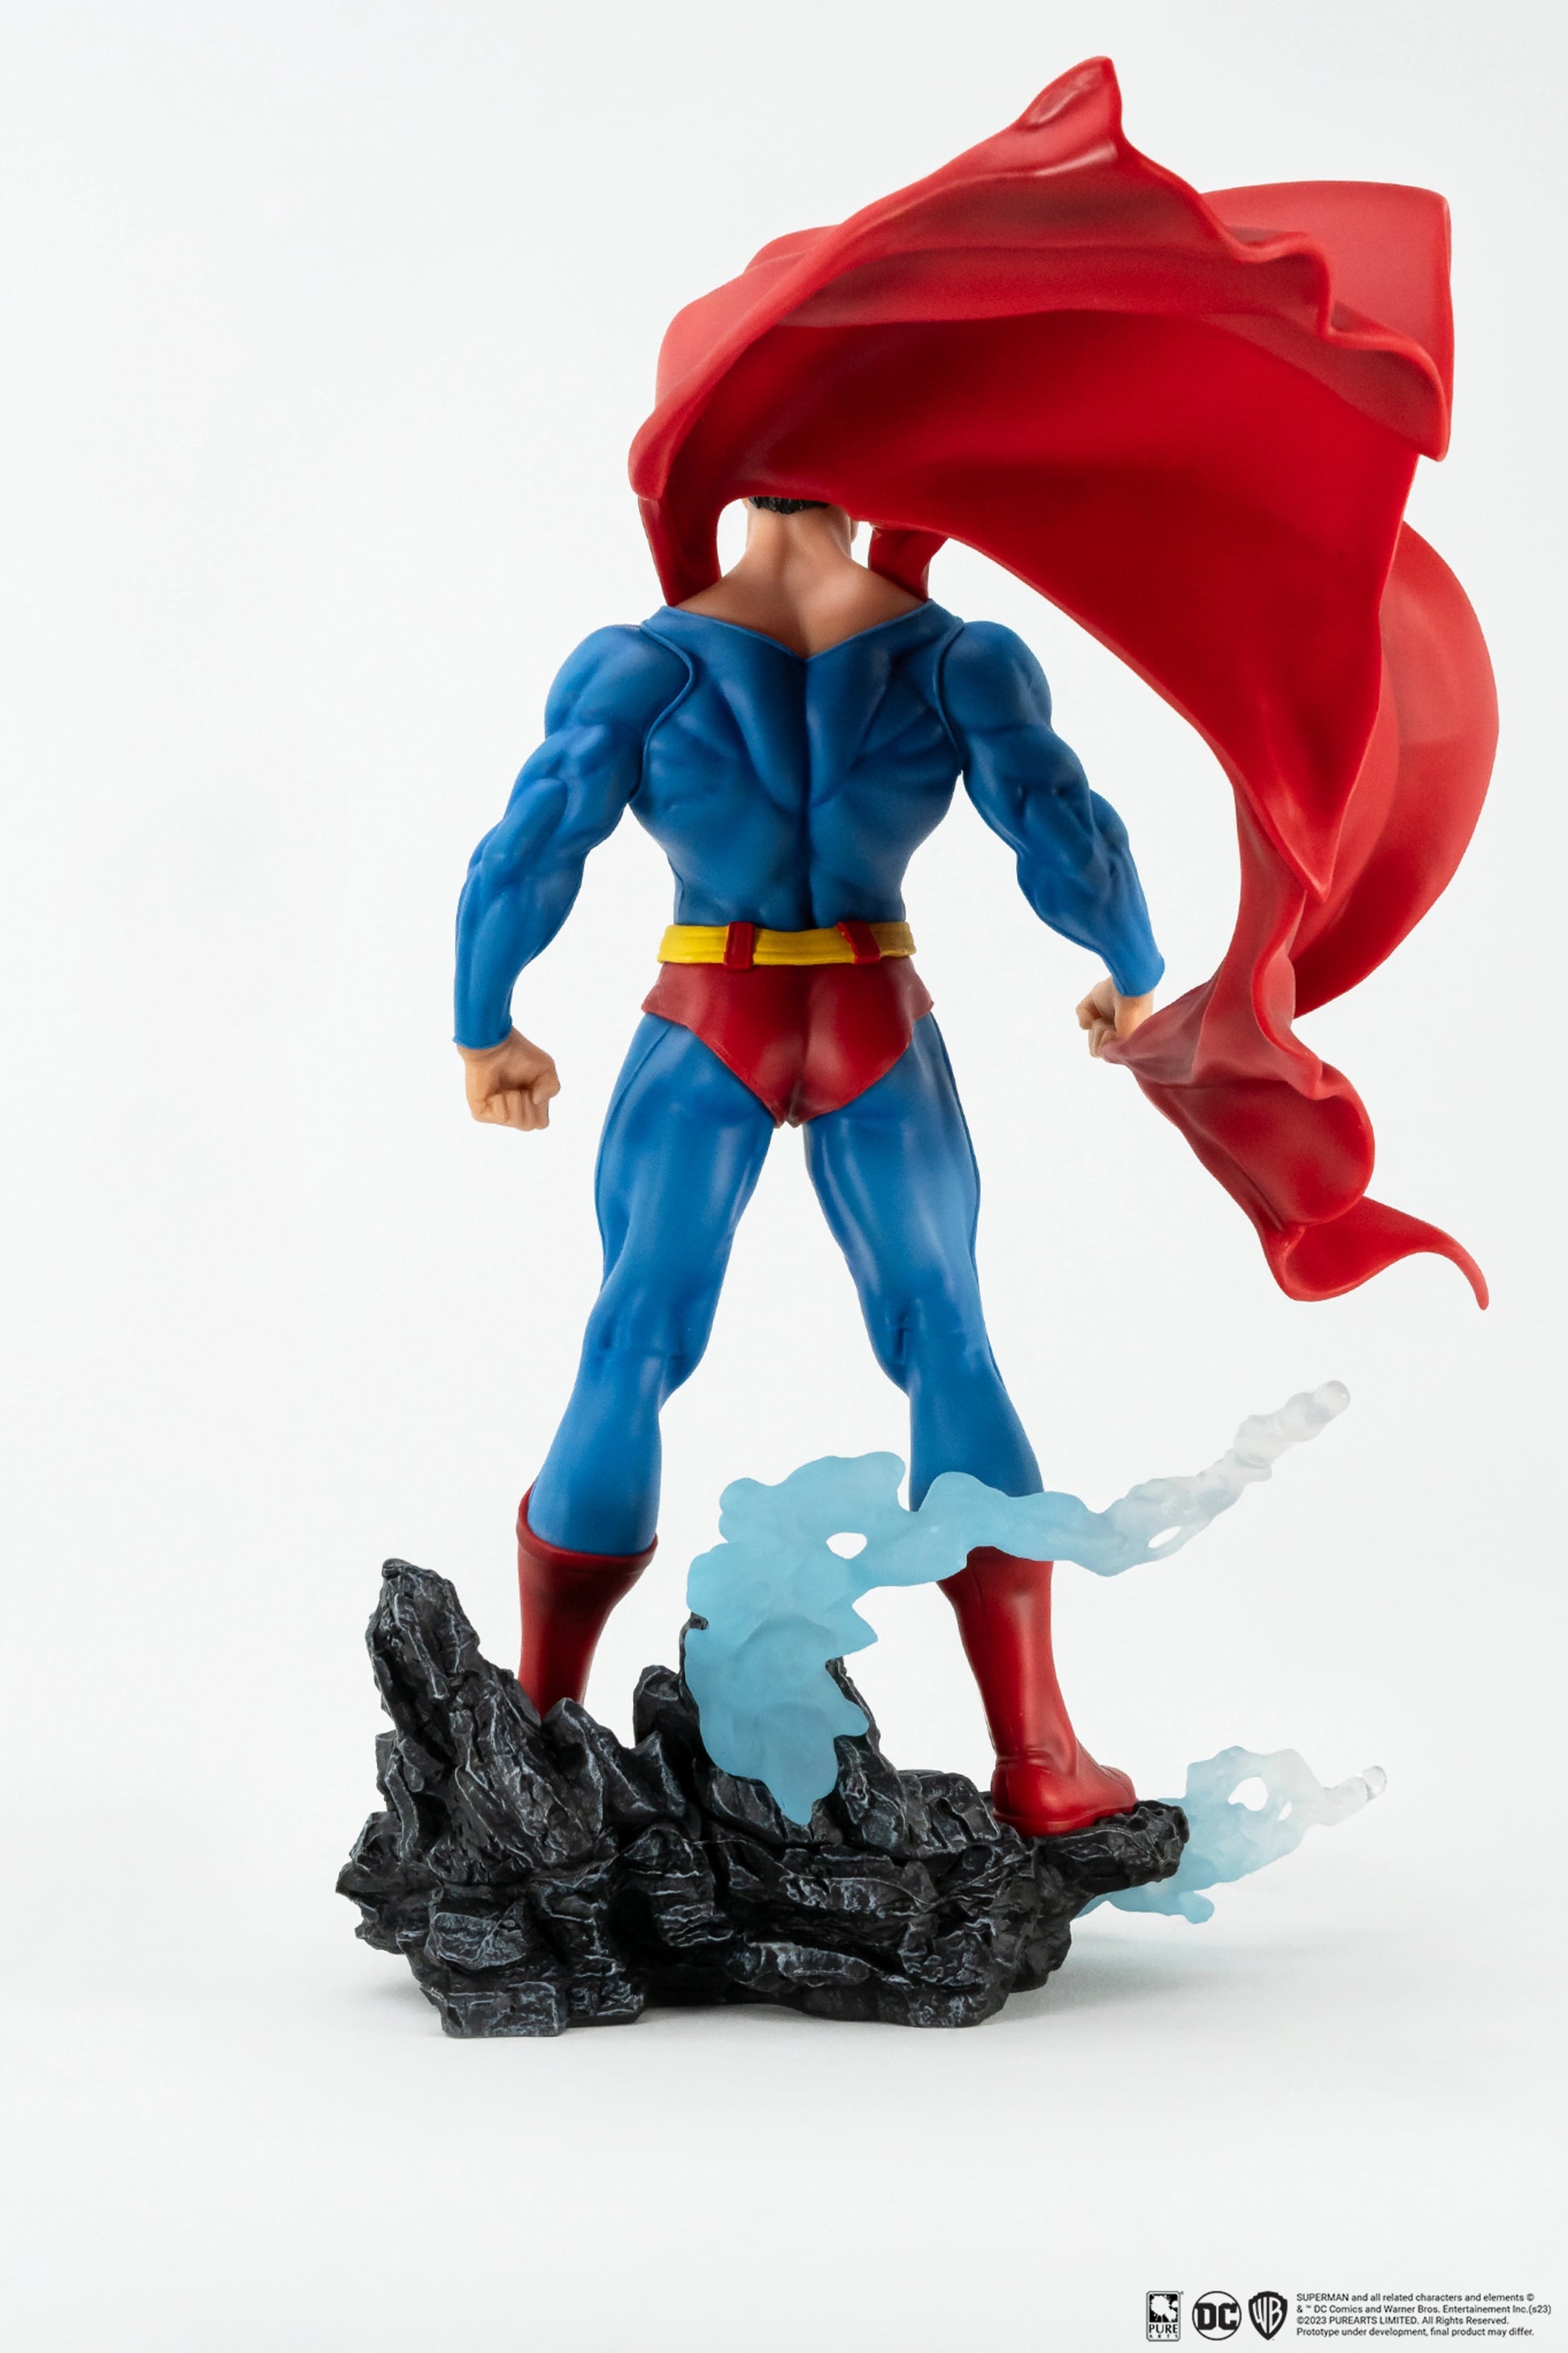 Statue Superman, DC Comics